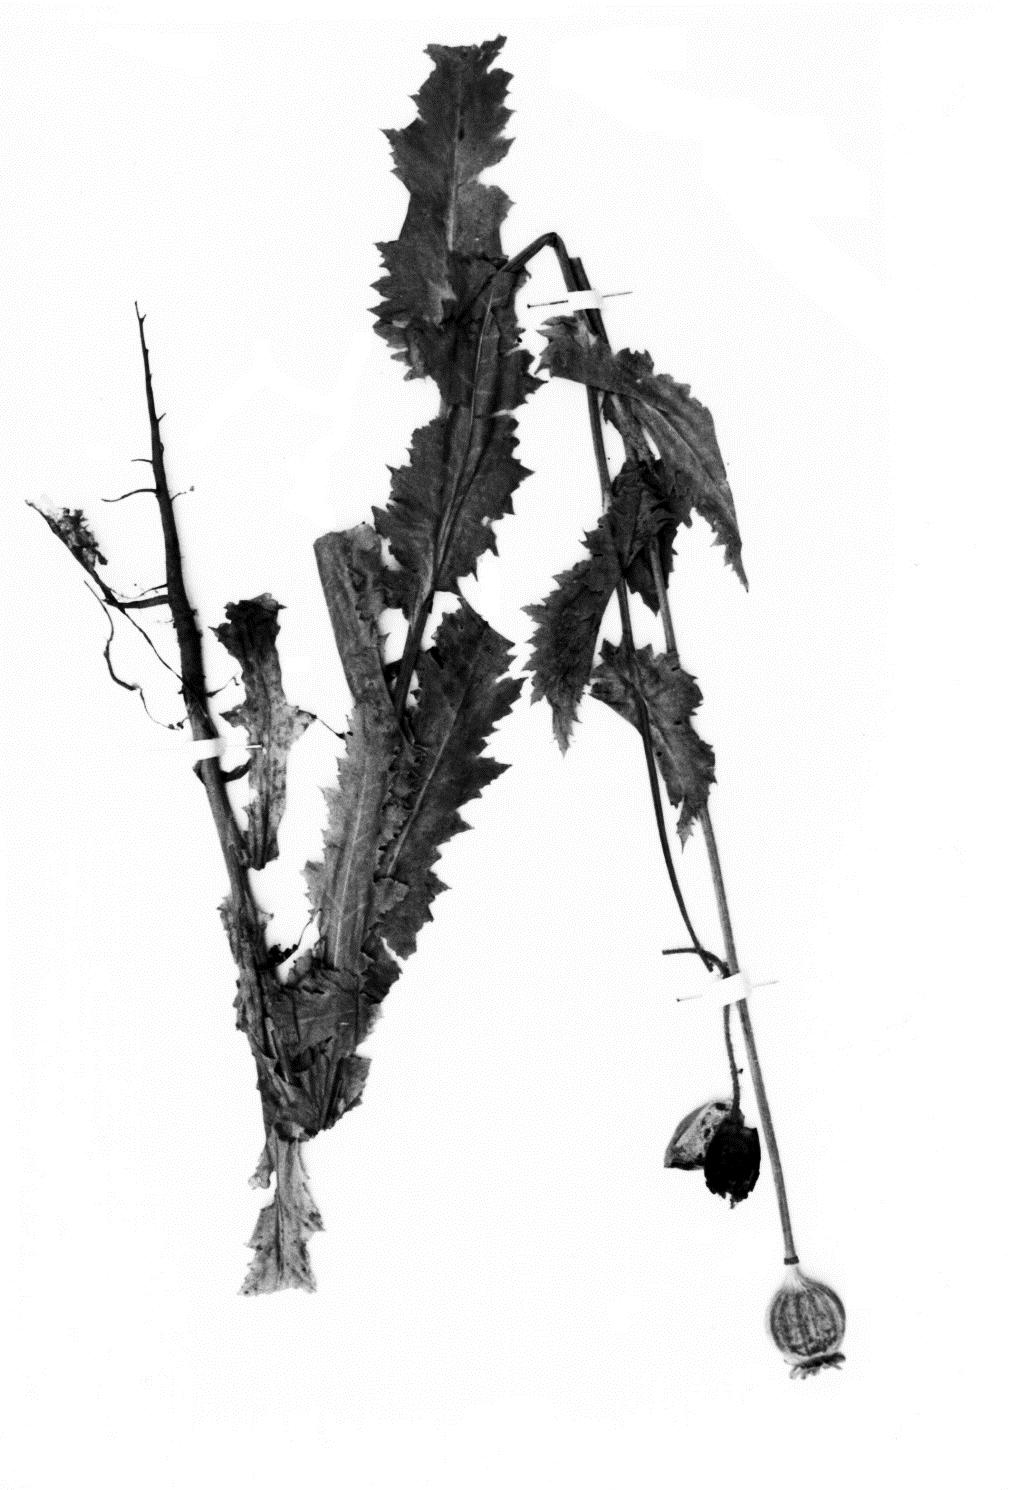 Famiglia: Genere: Papaveraceae Papaver Specie: P. somniferum L. Nome volgare: papavero da oppio?? Descrizione: Pianta annua, a fusto eretto, alto fino a 1 m.